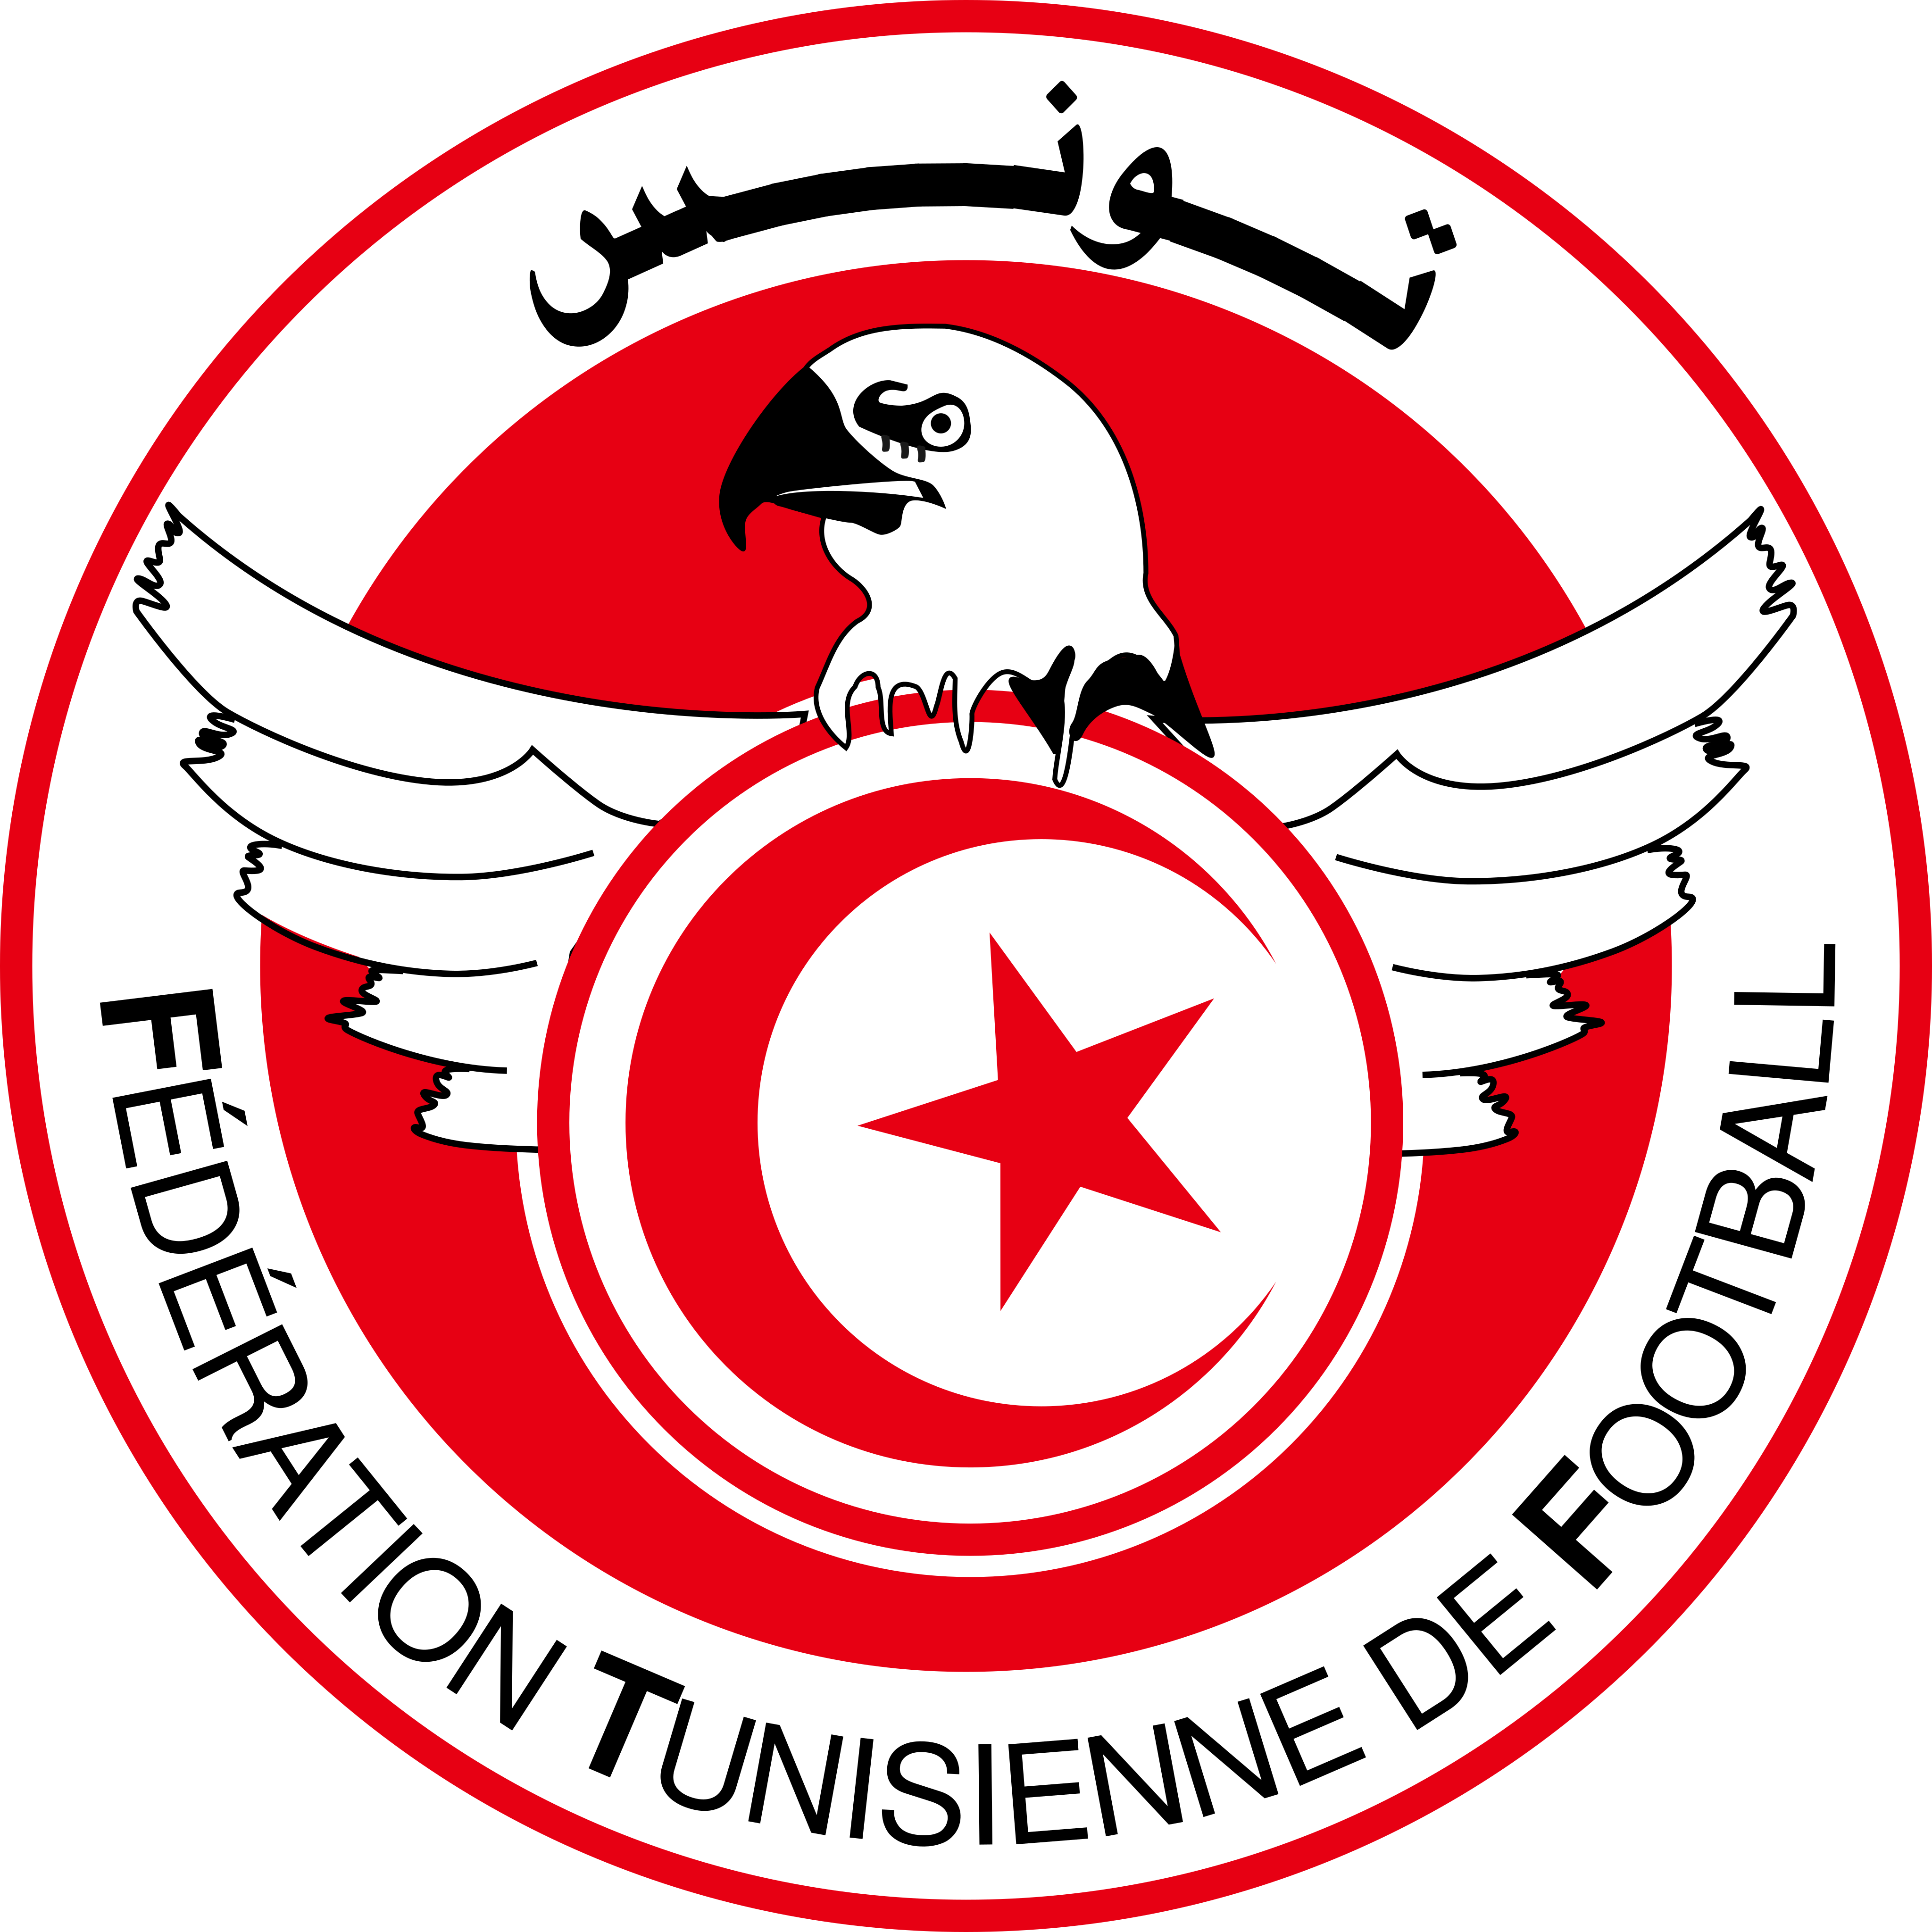 tunisia national football team logo - Tunisia National Football Team